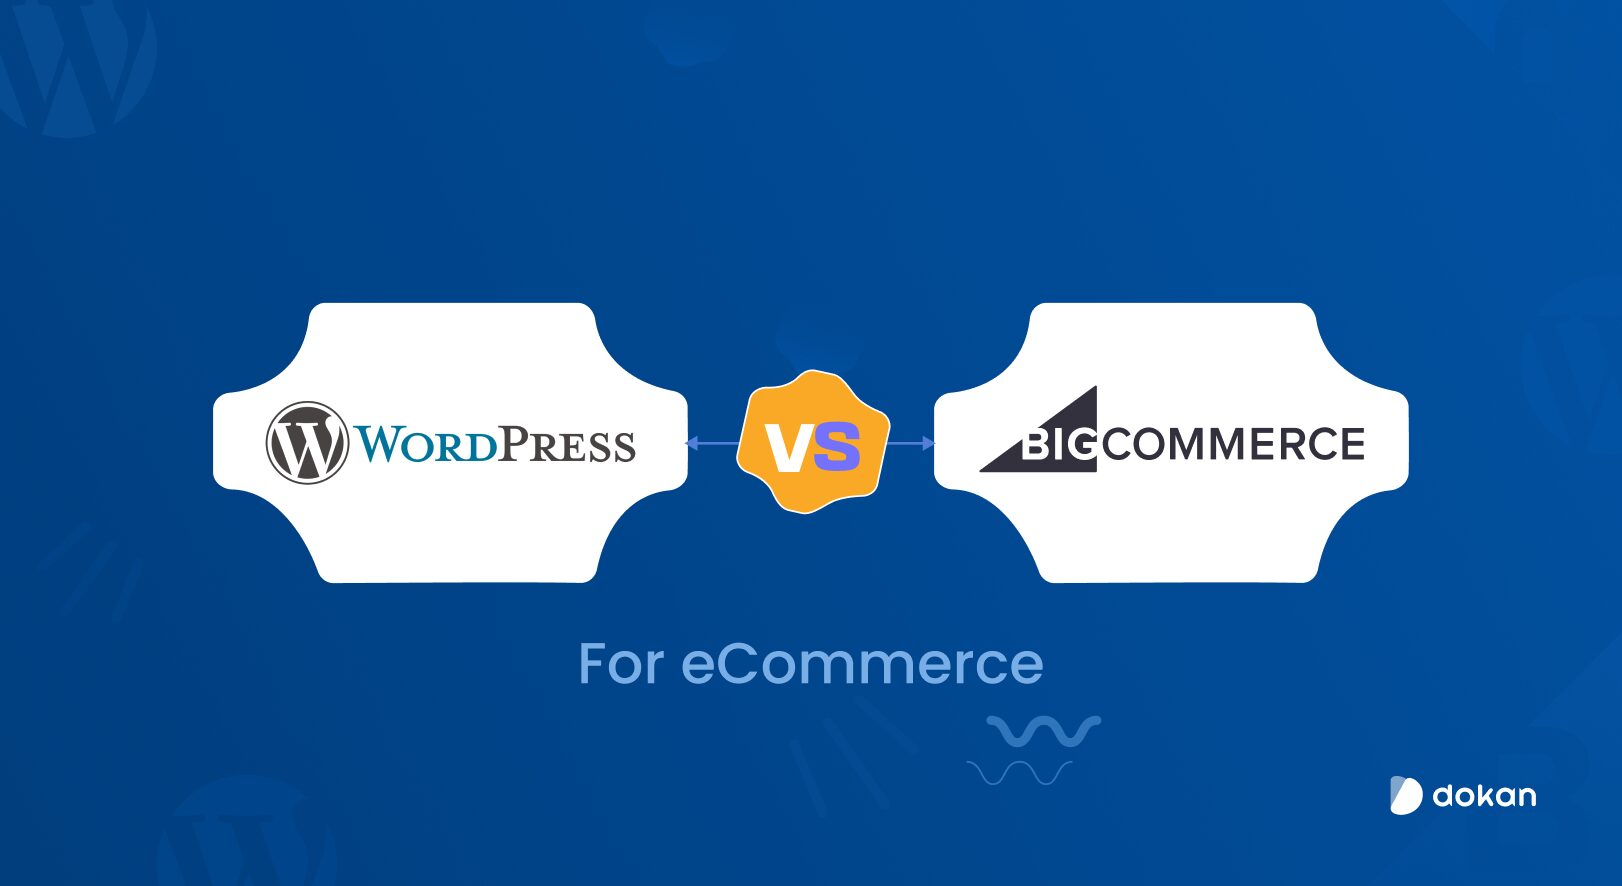 BigCommerce مقابل WordPress للتجارة الإلكترونية